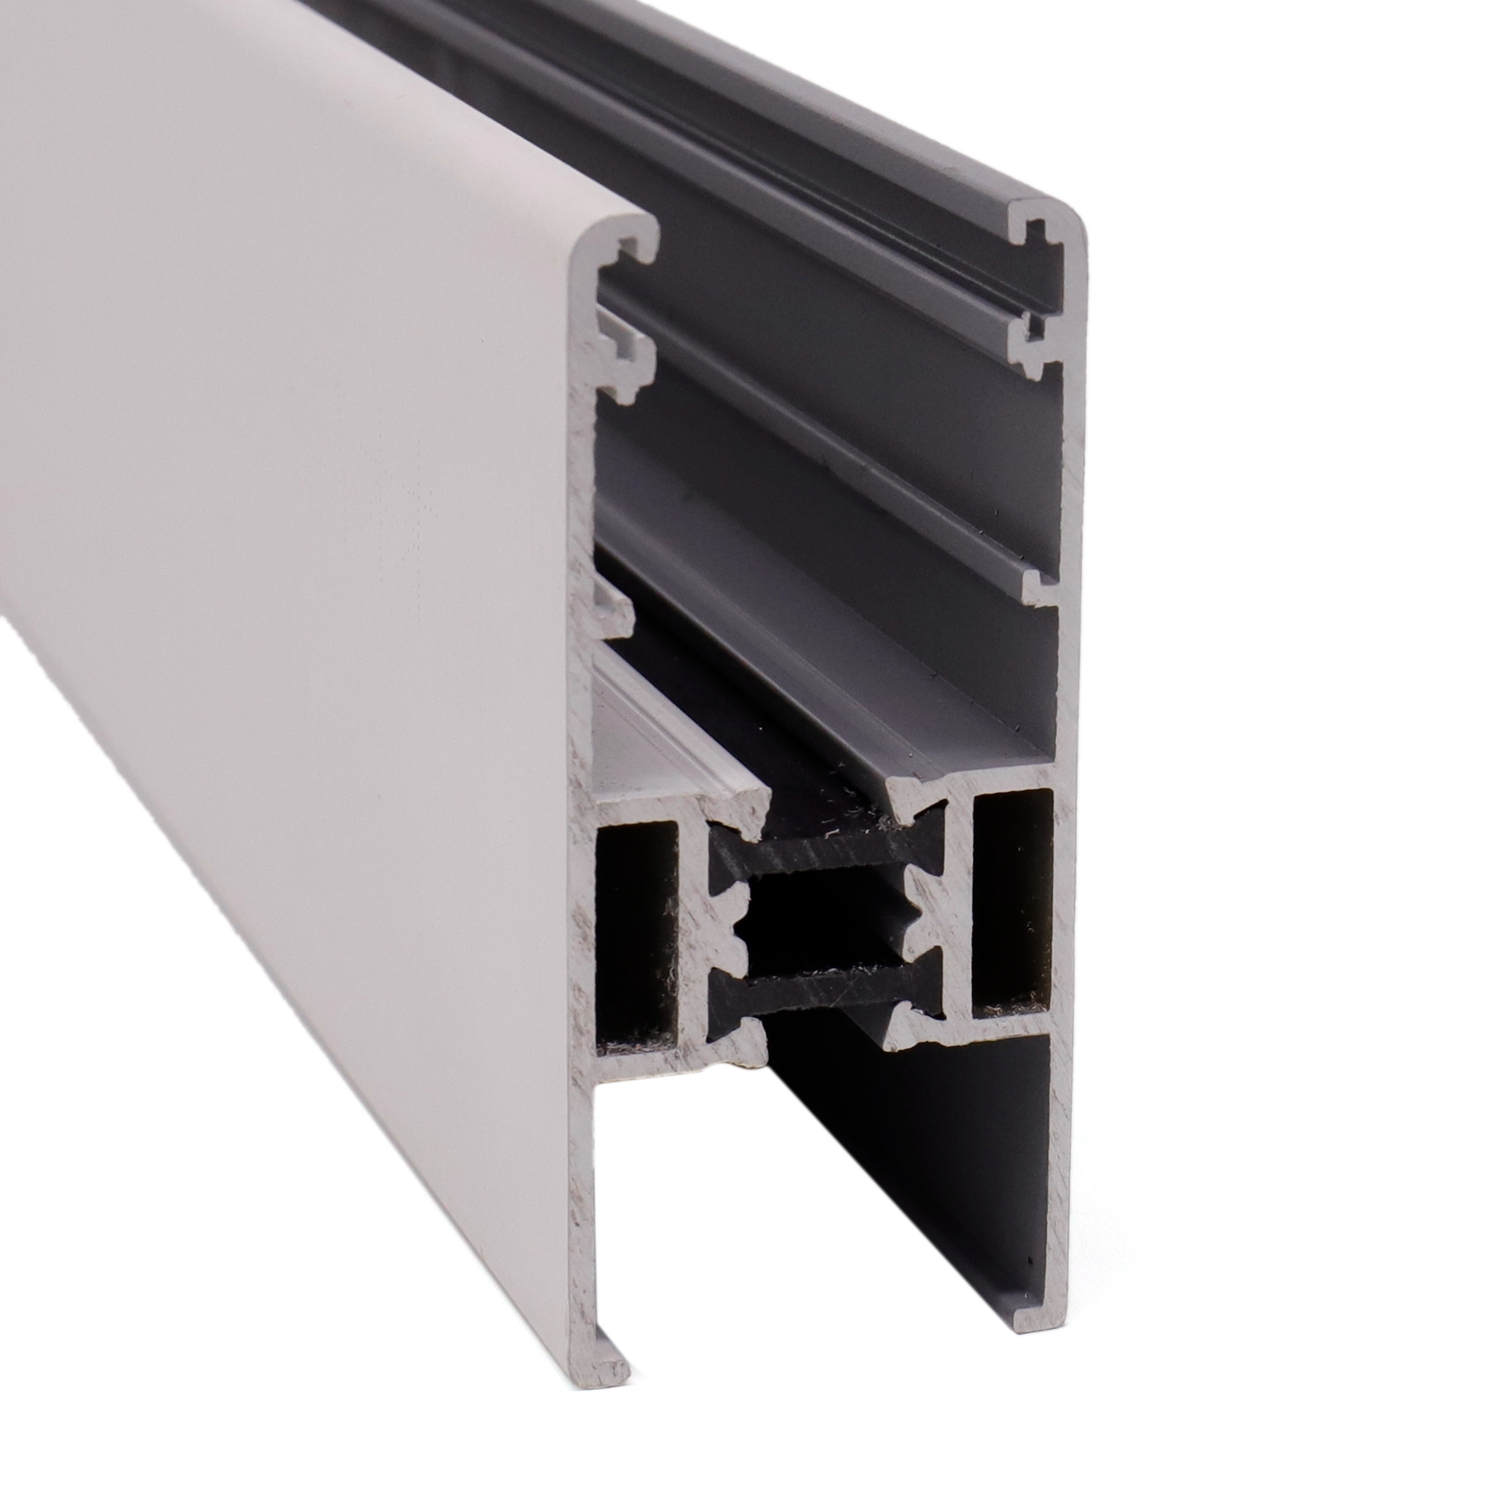 Aluminium-Extrusionsprofil mit thermischer Trennung für Schiebefenster und -türen
